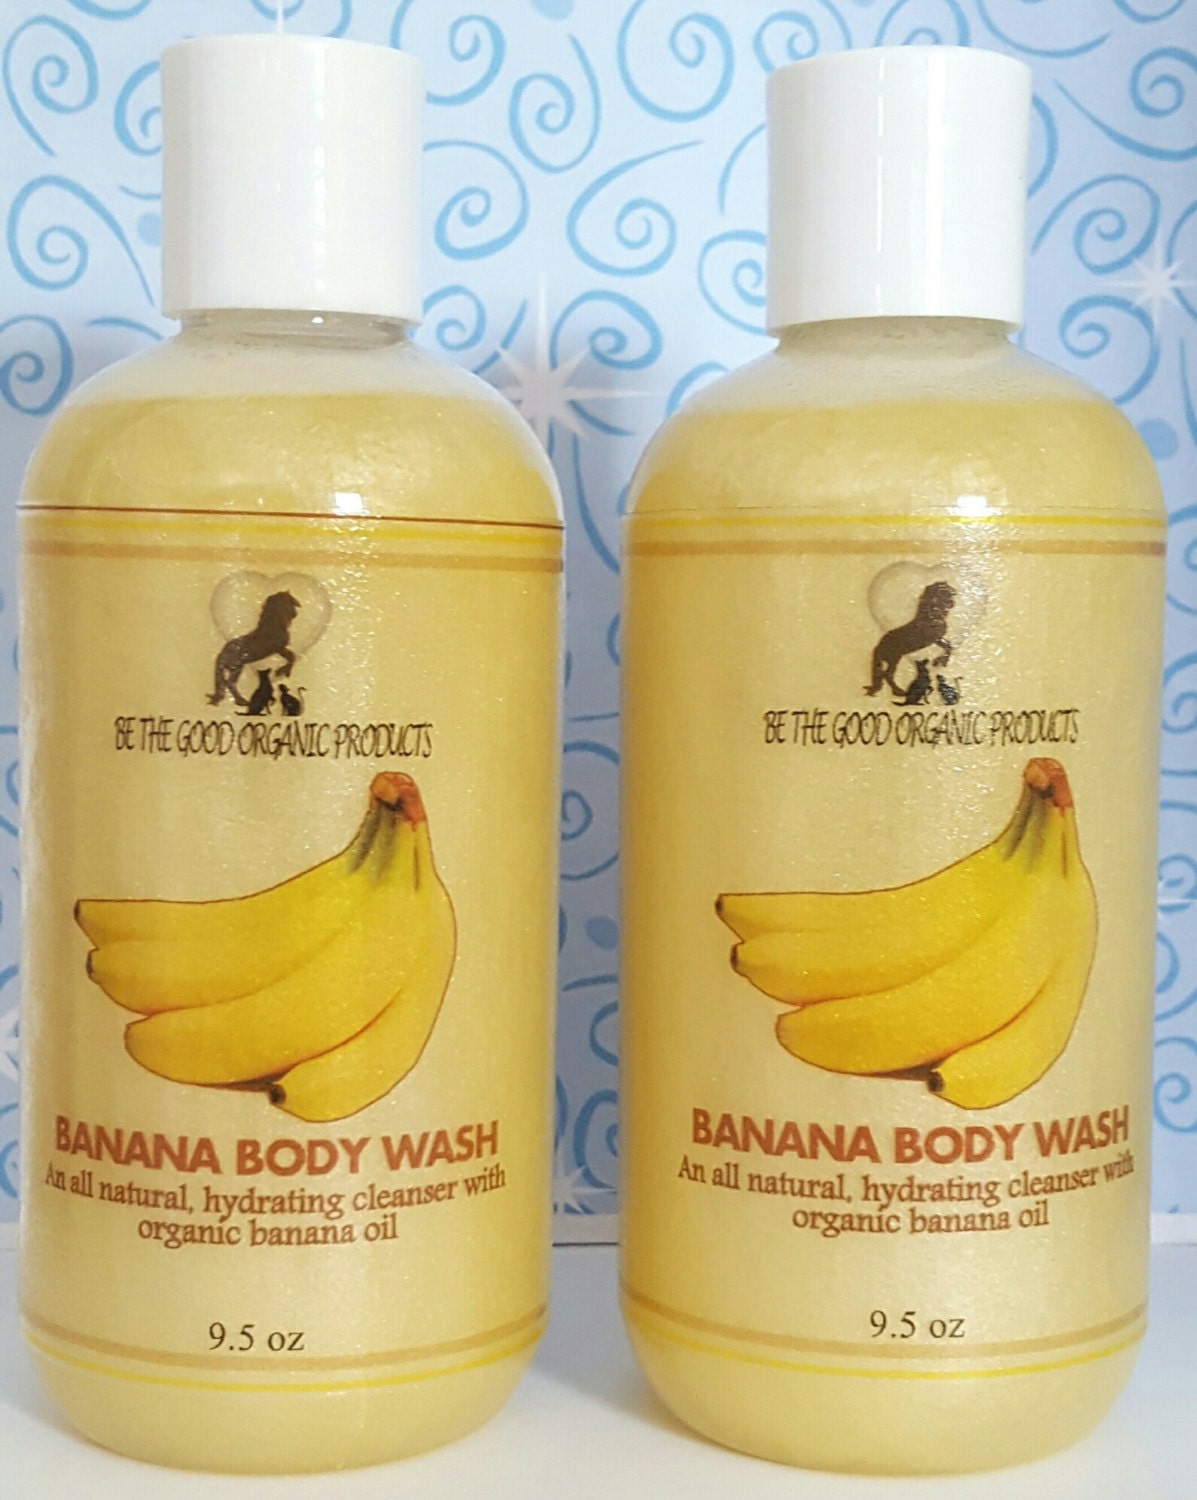 All Natural Body Wash/Shower Gel Banana Body Wash